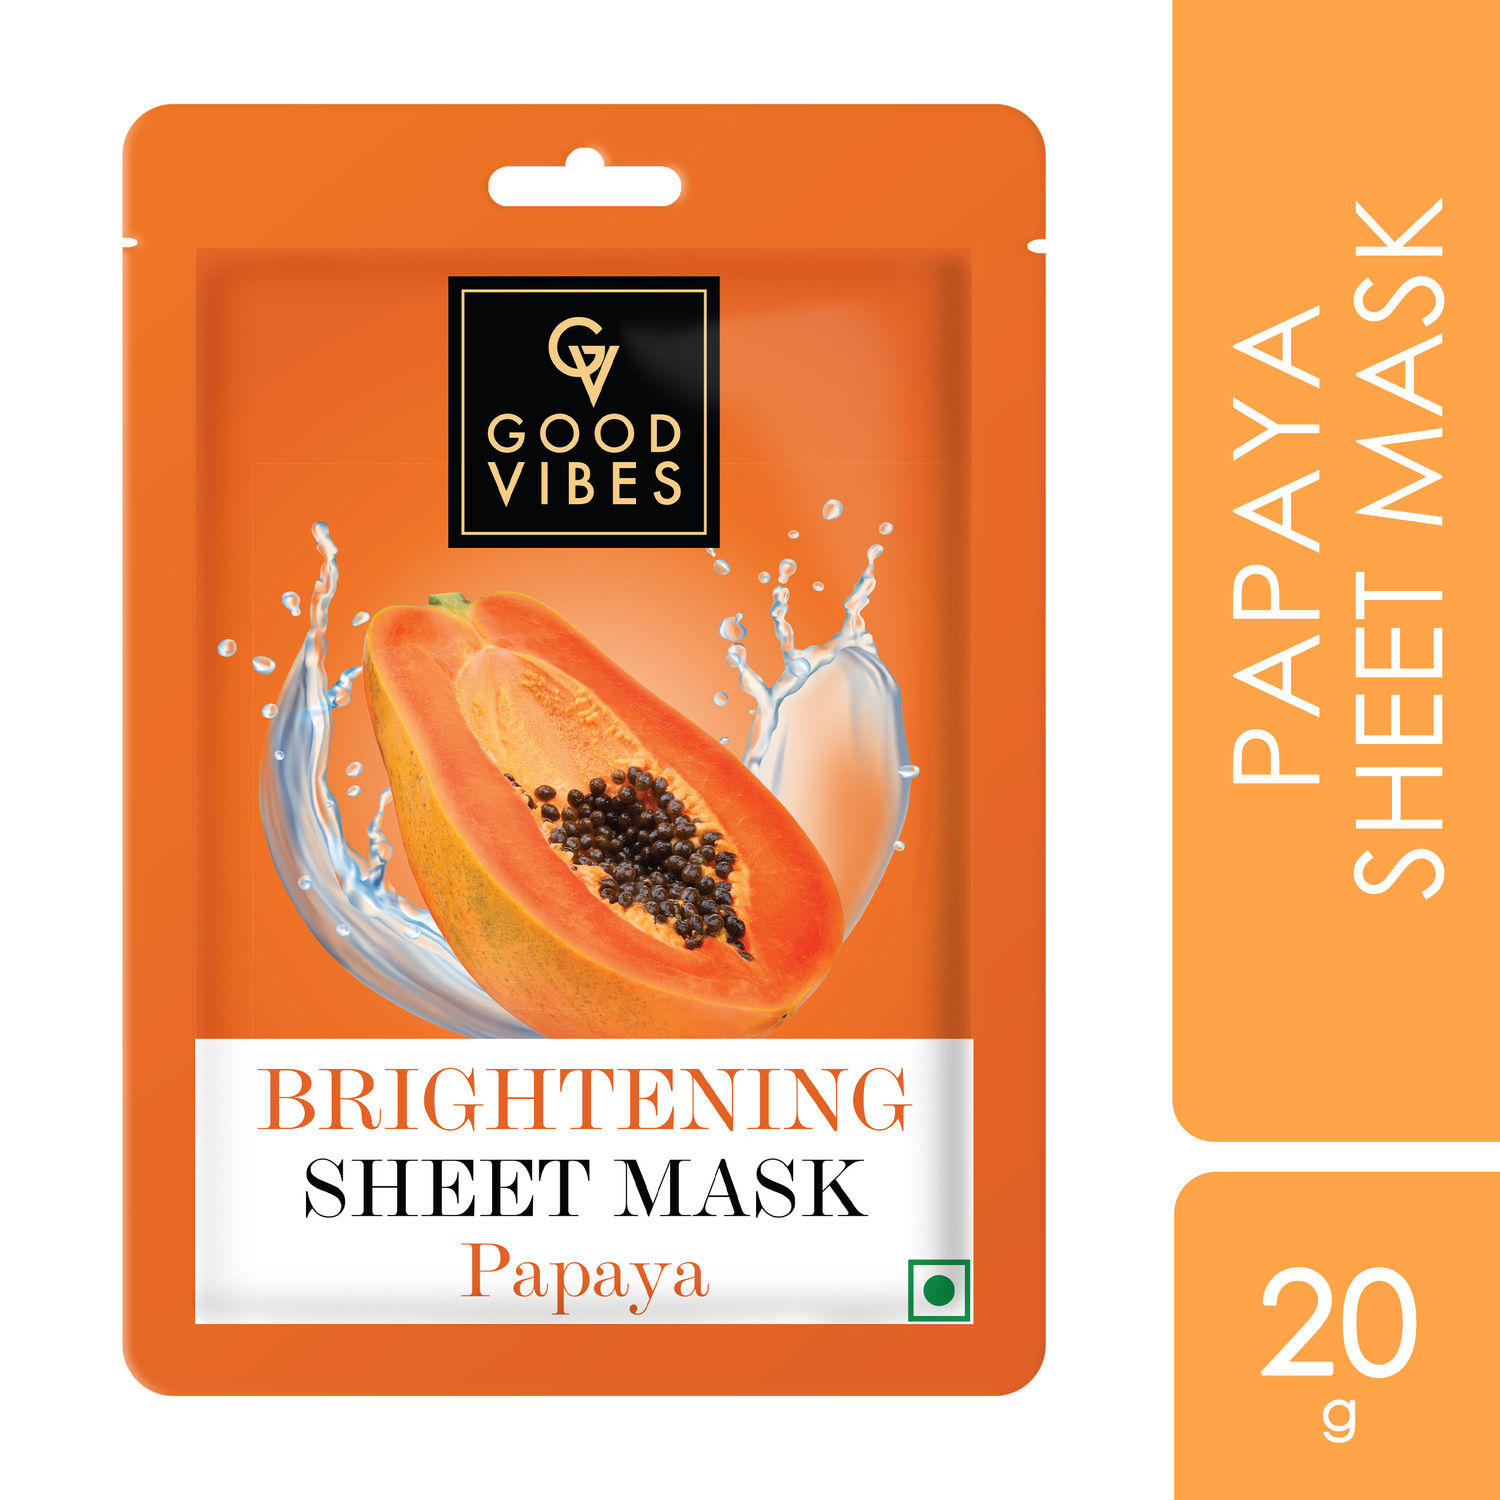 Buy Good Vibes Papaya Brightening Sheet Mask | Glowing Softening Anti-Pigmentation | Vegan No Parabens No Sulphates No Alcohol No Animal Testing (20 gm) - Purplle